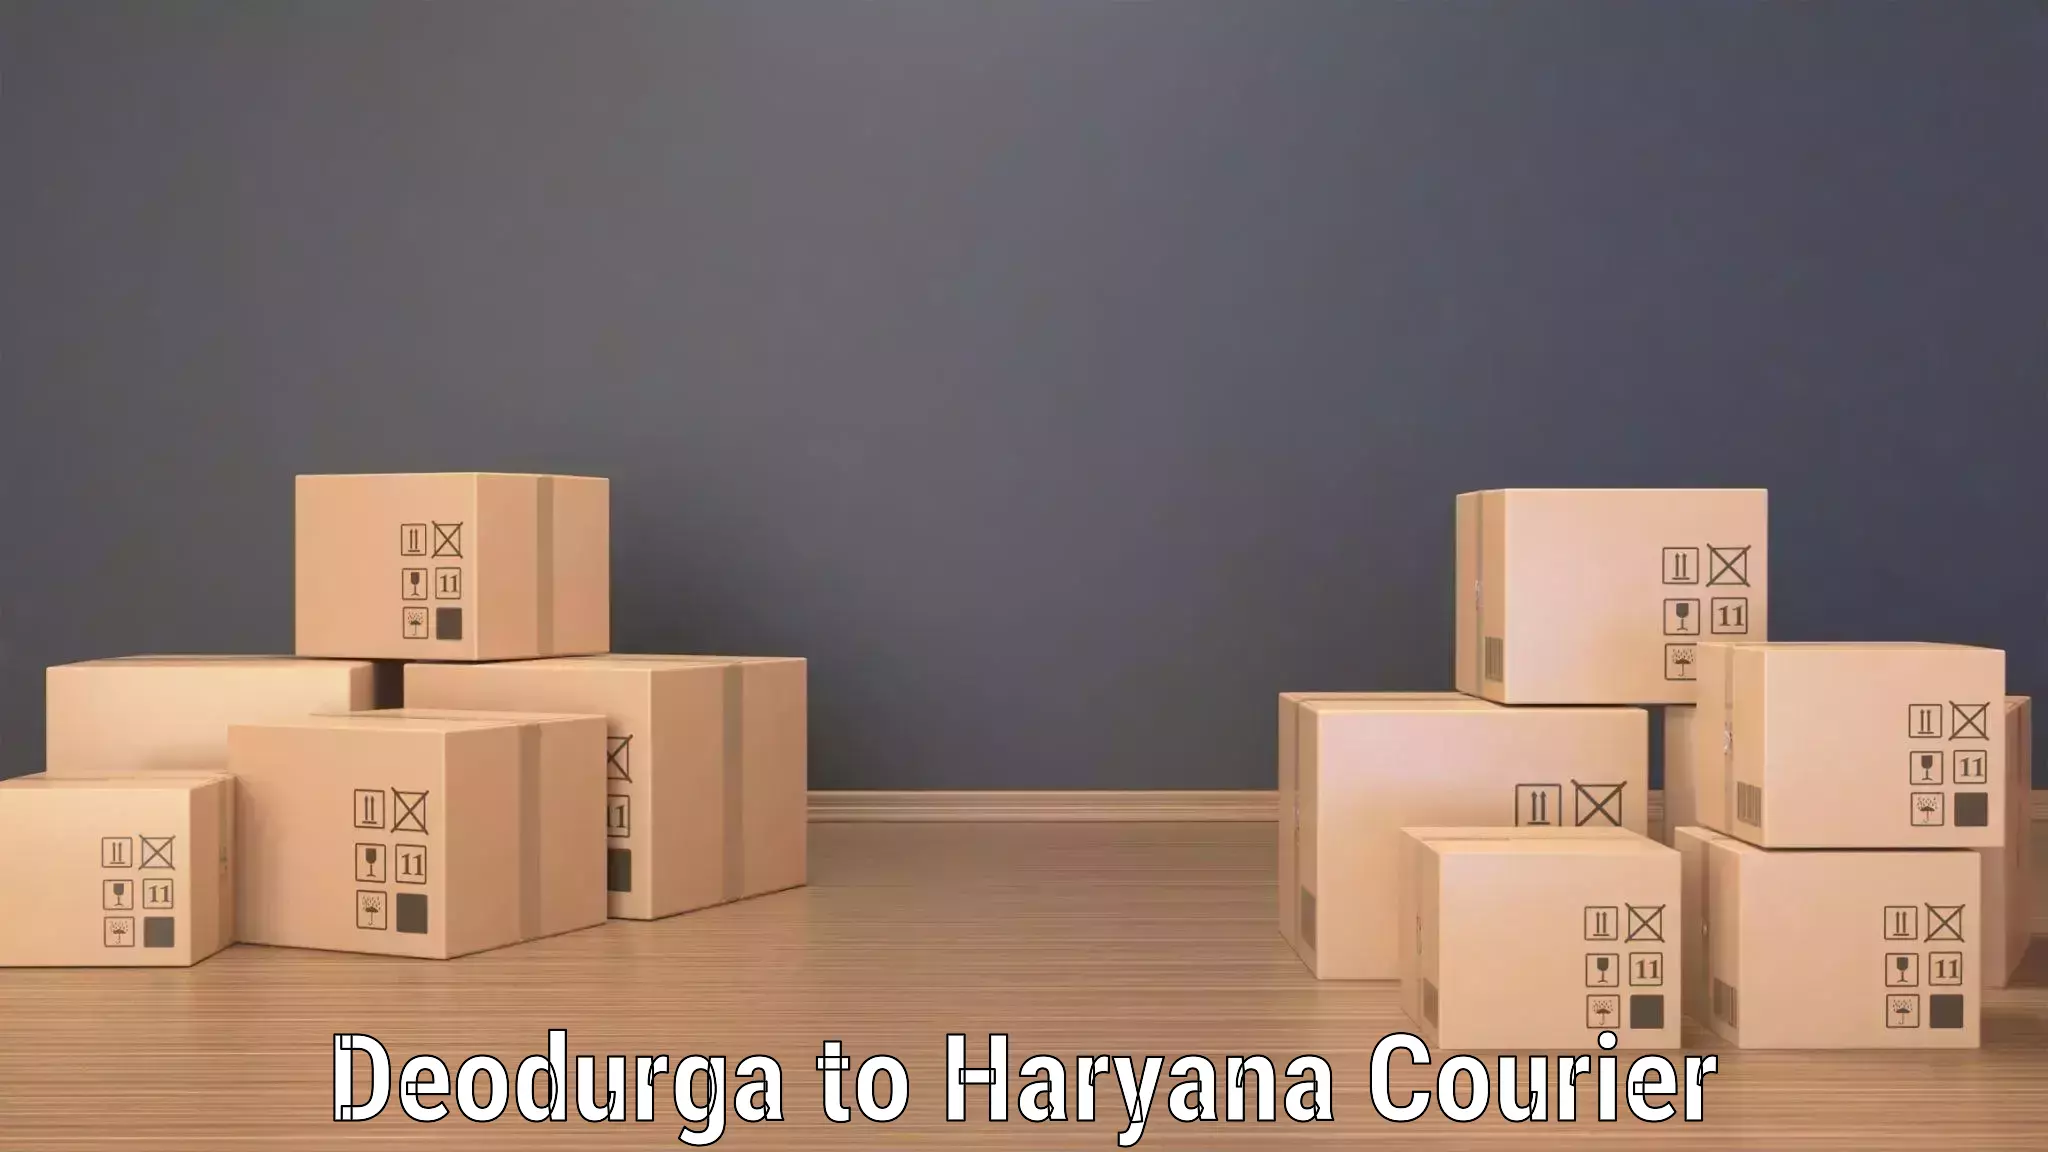 Express package handling Deodurga to Gurgaon